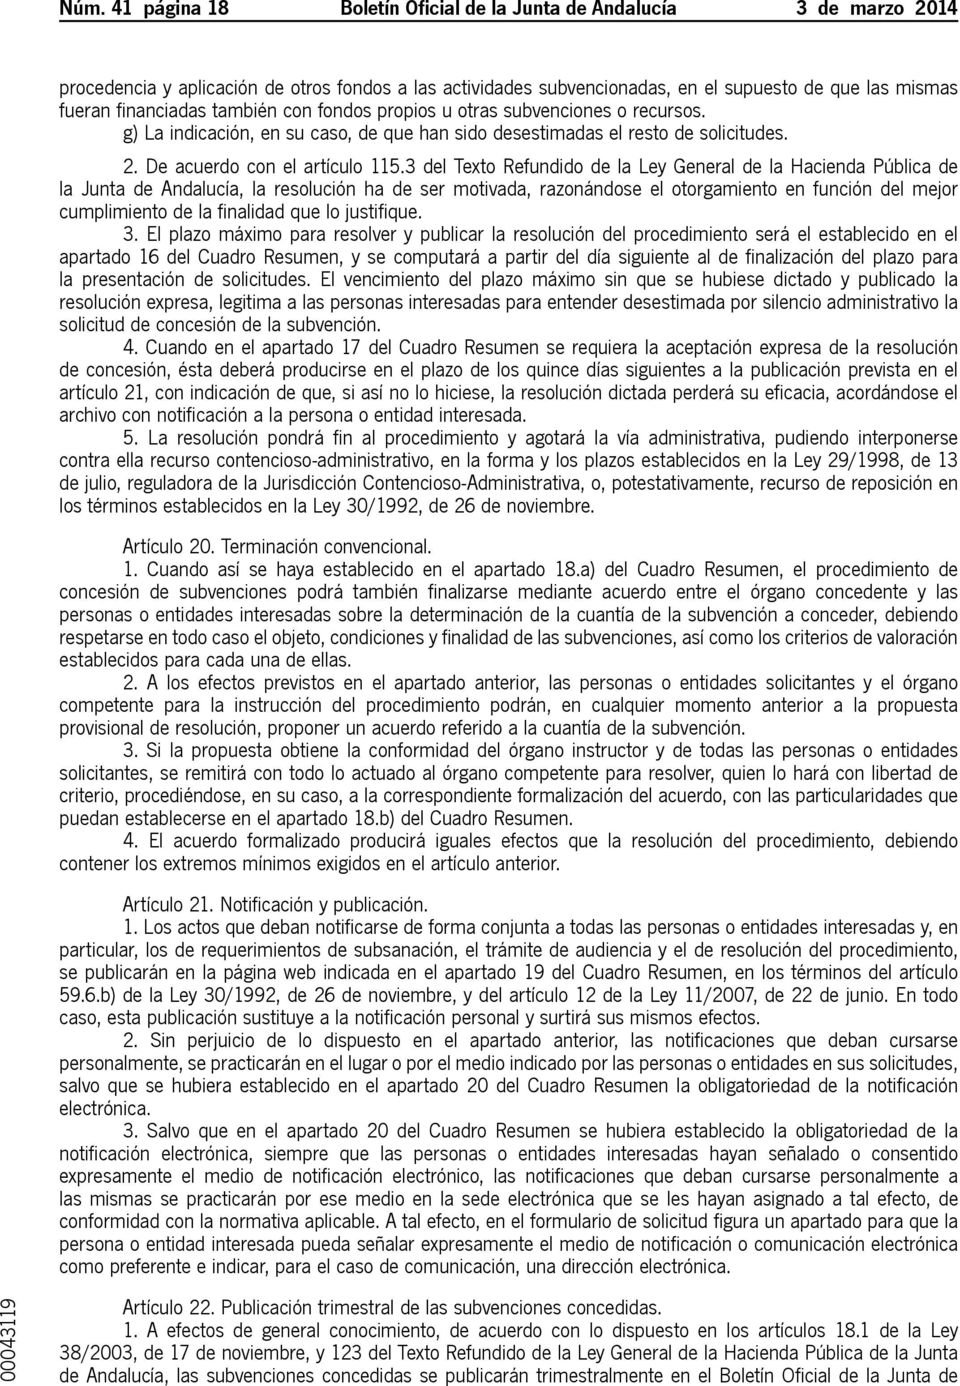 3 del Texto Refundido de la Ley General de la Hacienda Pública de la Junta de Andalucía, la resolución ha de ser motivada, razonándose el otorgamiento en función del mejor cumplimiento de la